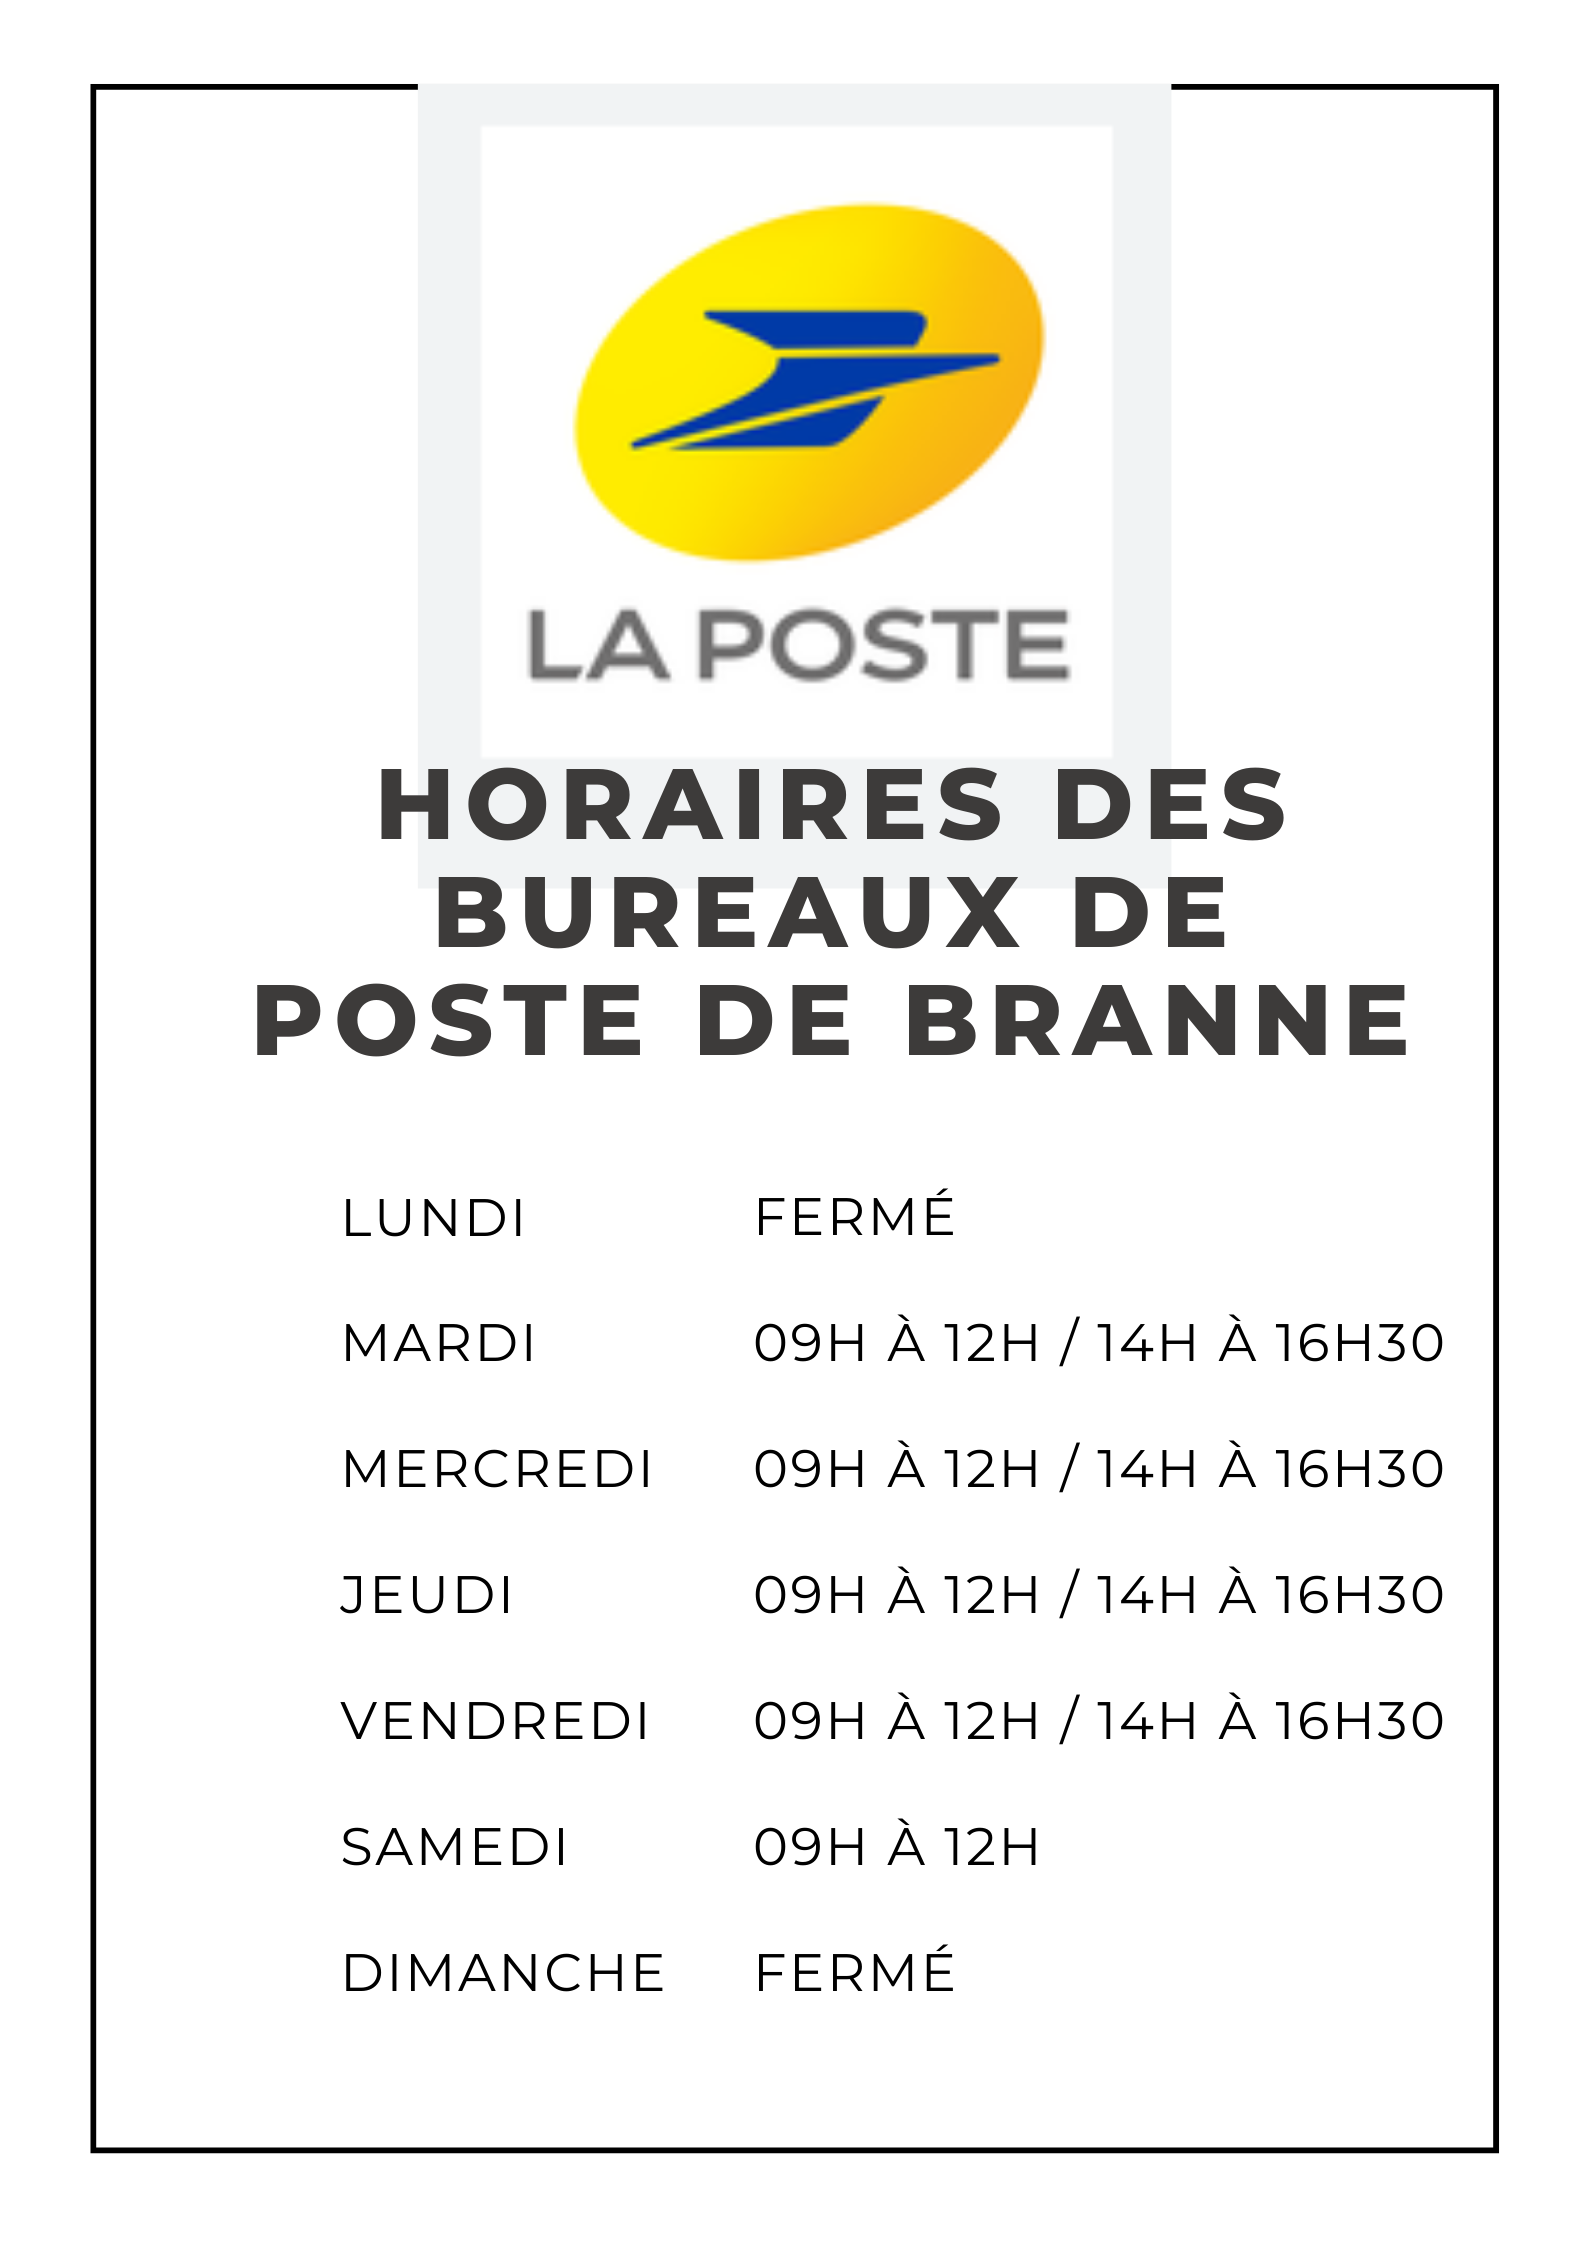 hORAIRES_DES_BUREAUX_DE_POSTE_DE_branne.png